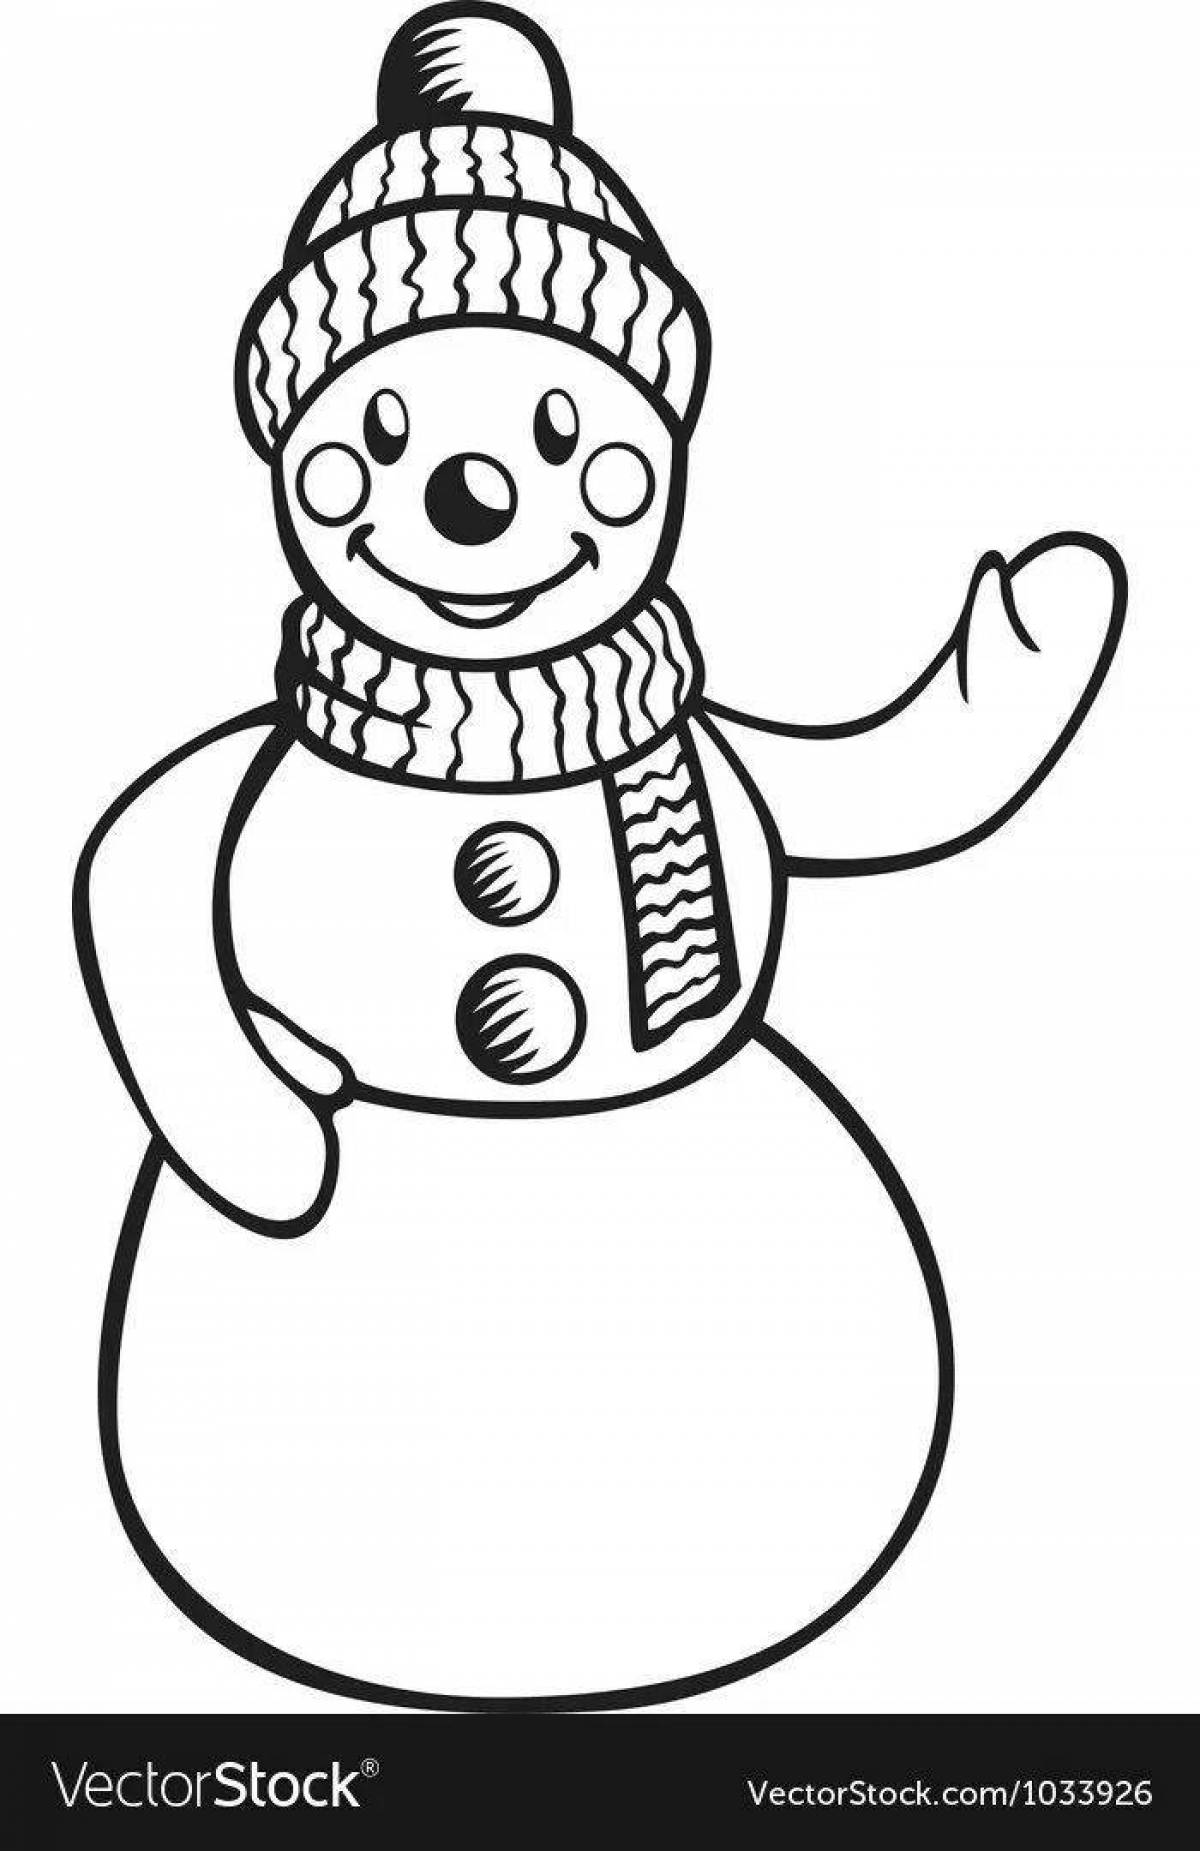 Веселые снеговики в разноцветных шапочках и шарфах